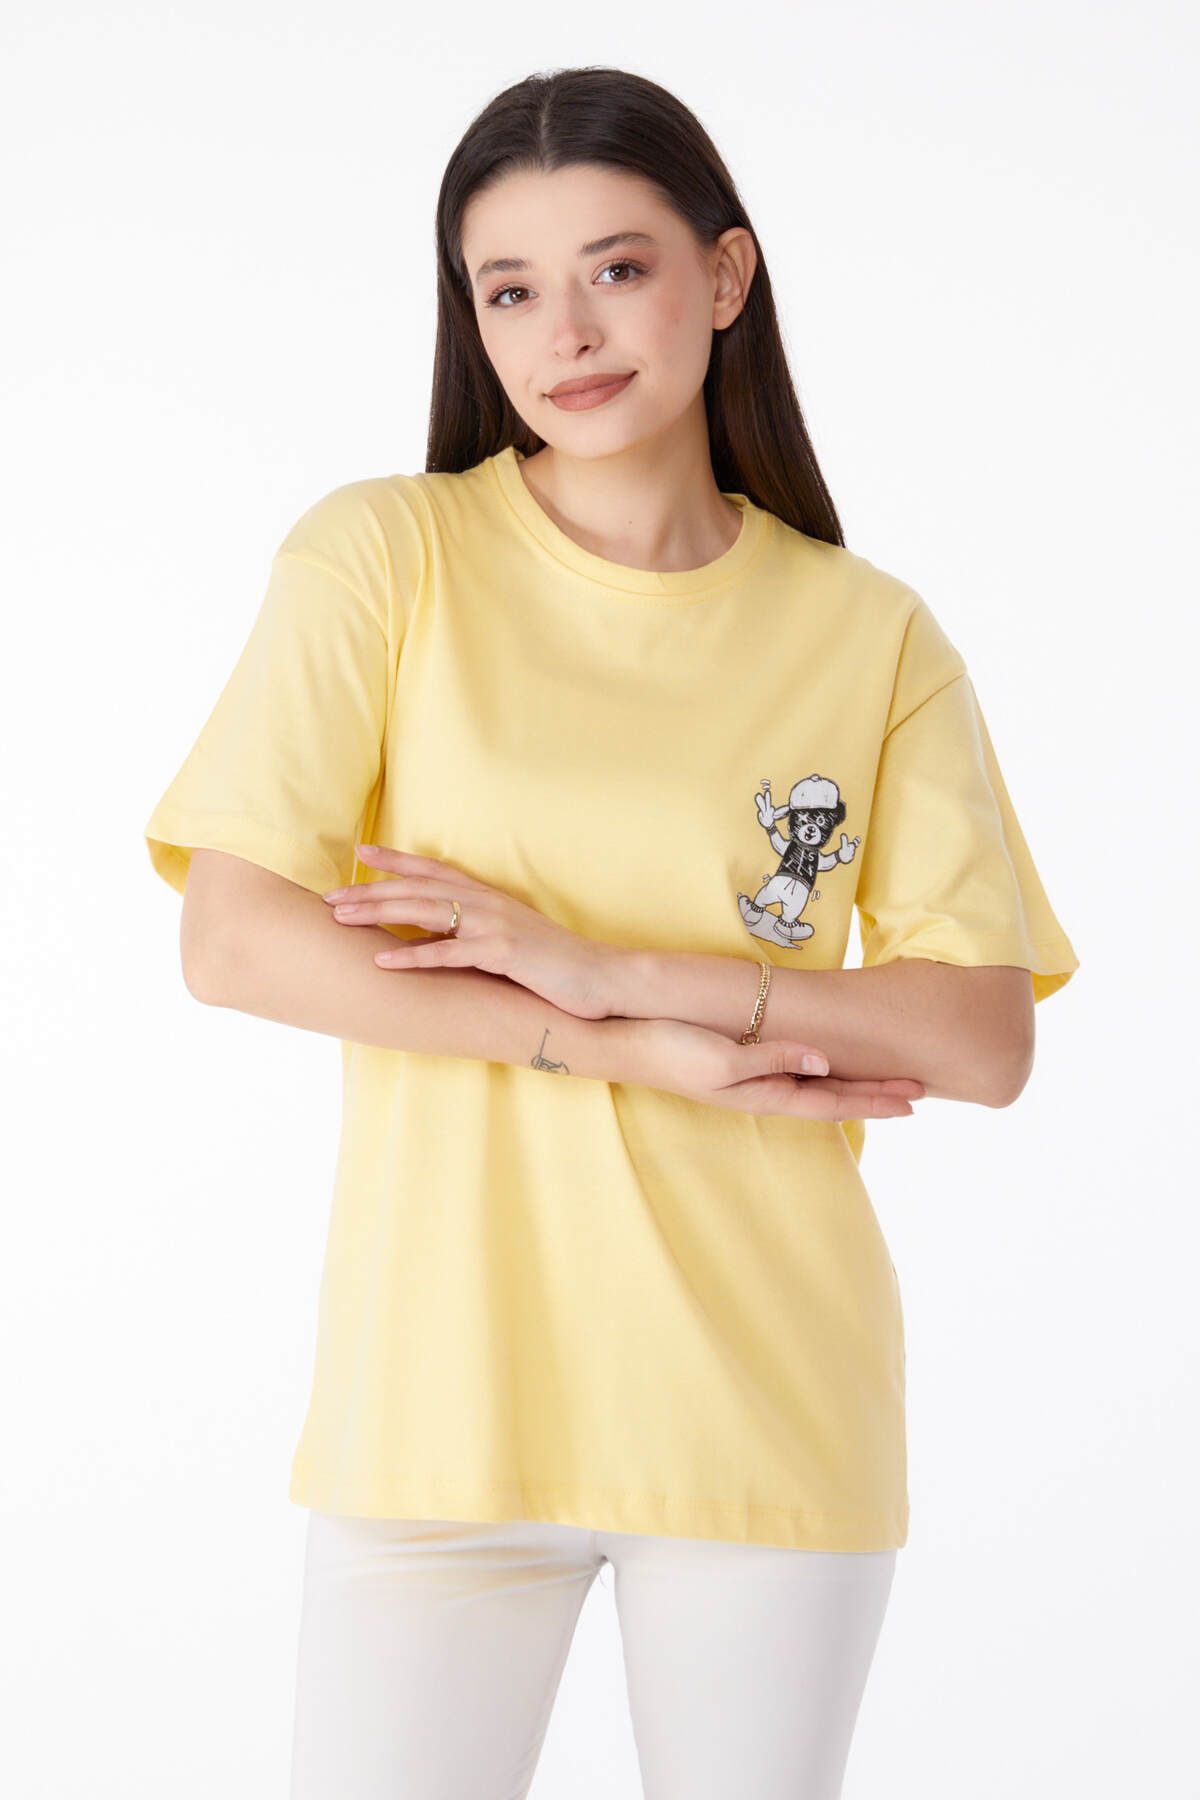 TOFİSA Düz Bisiklet Yaka Kadın Sarı Baskılı T-shirt - 25287